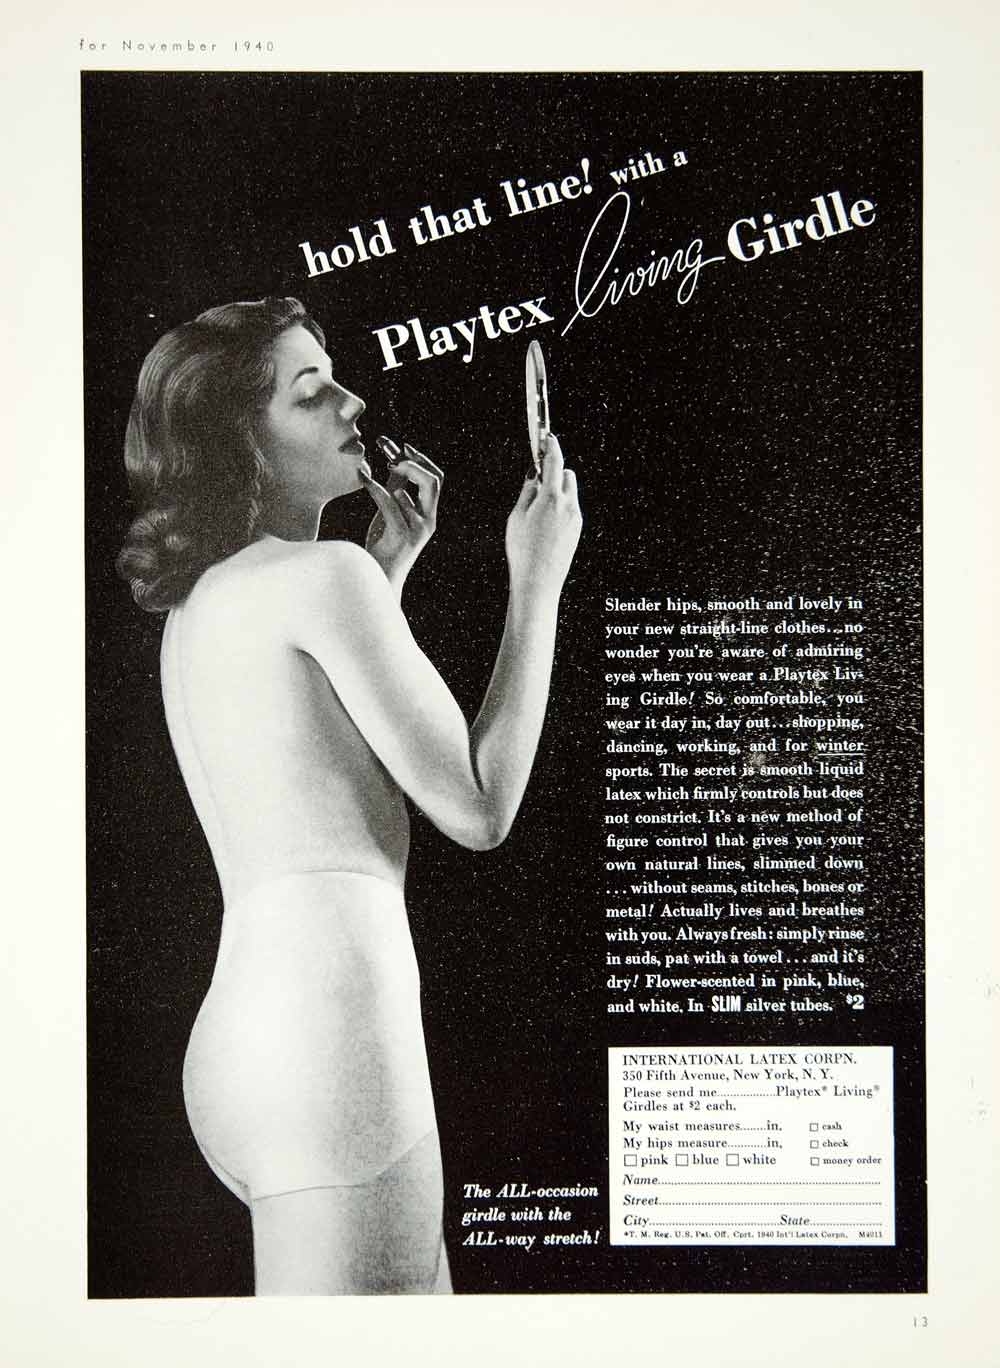 Talon (Girdles) 1940 Girdle — Advertisement